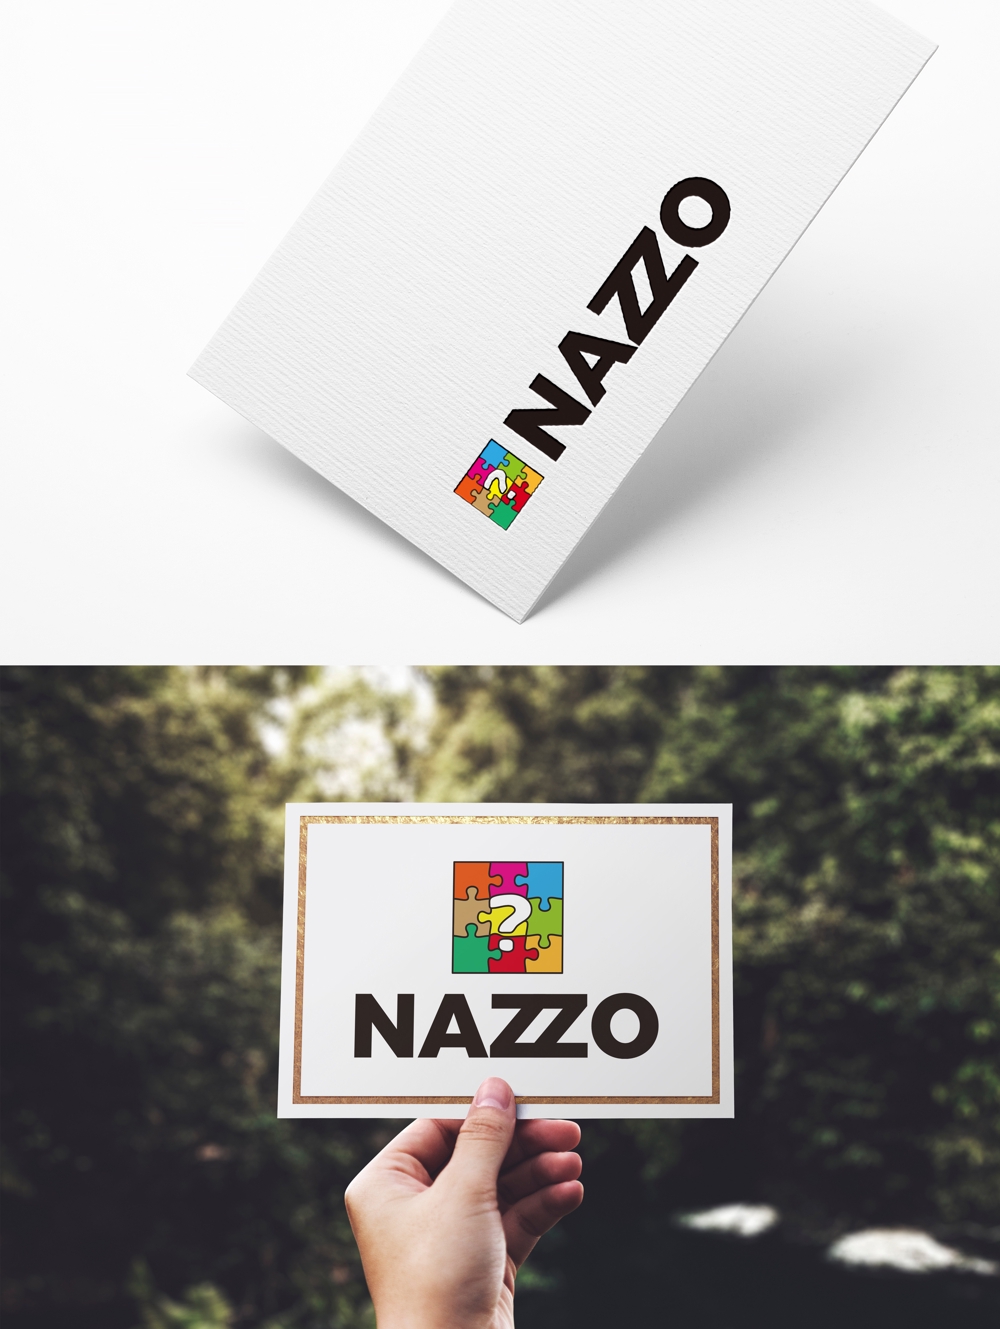 弊社新ブランド「NAZZO」のロゴ